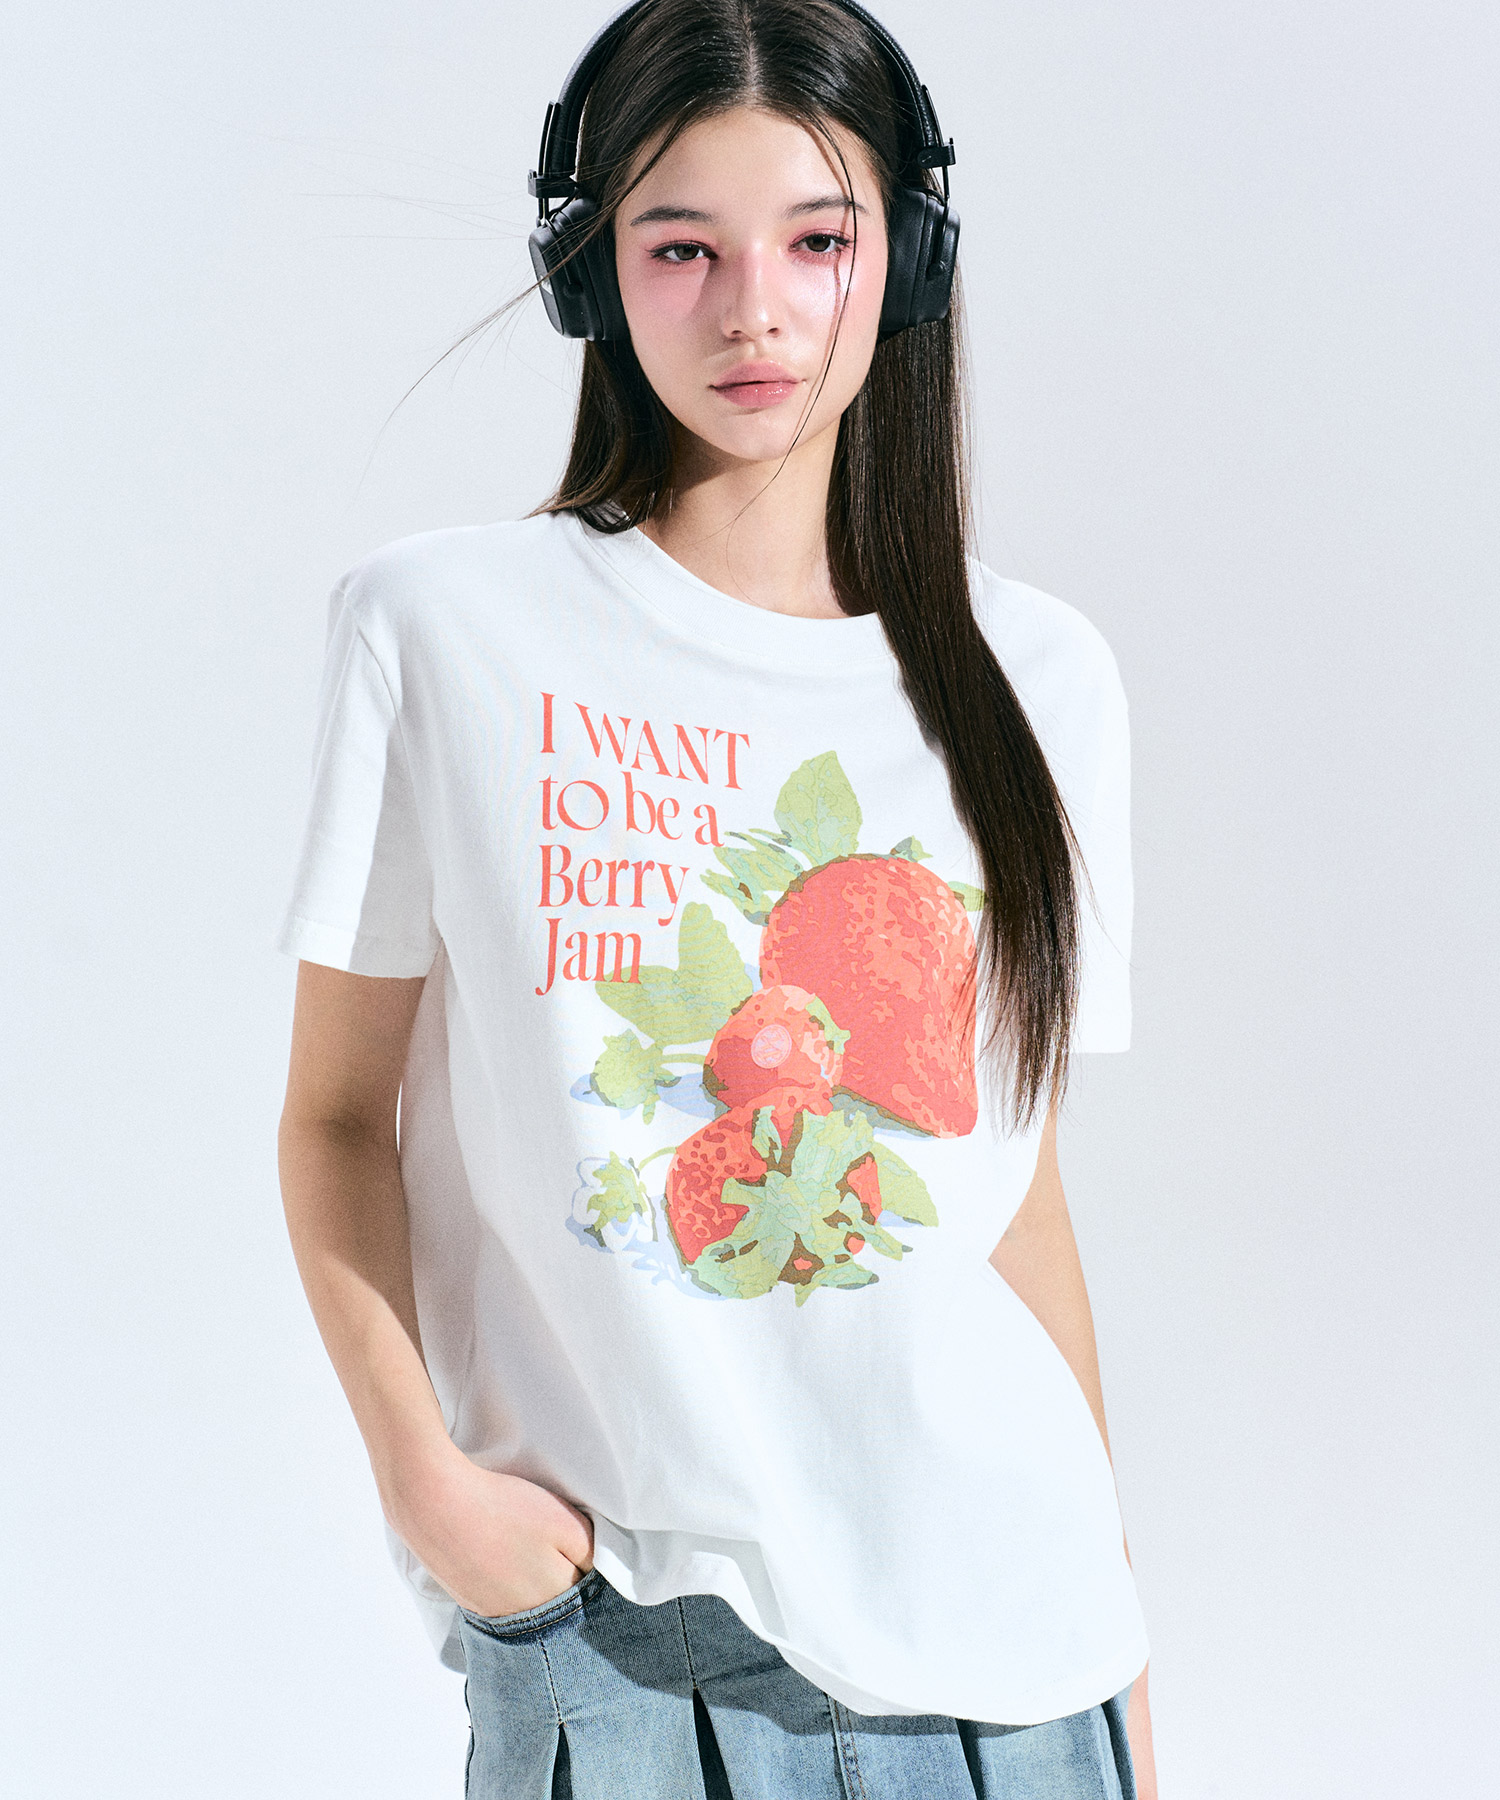 베리 드림 그래픽 티셔츠 [WHITE] 김나영이 착용한 제로플래닛